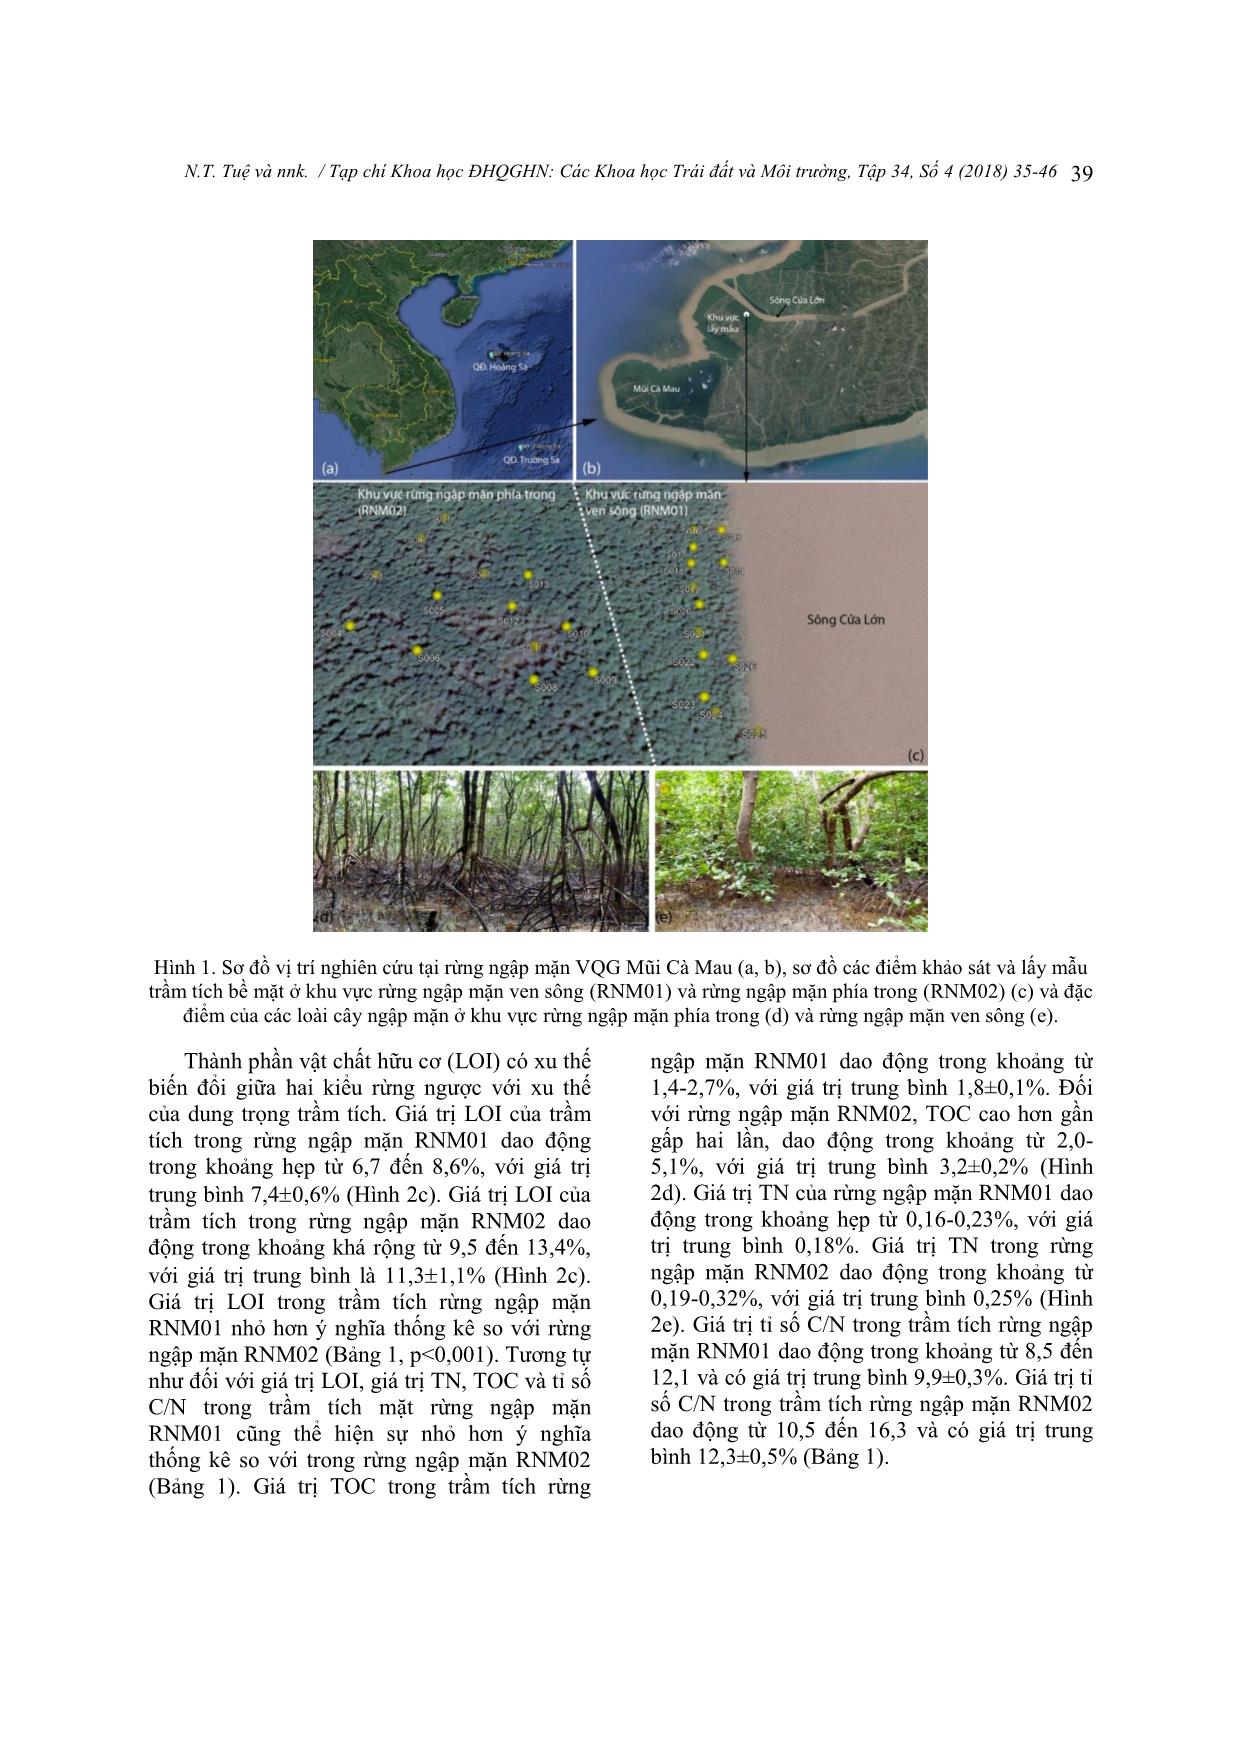 Xác định nguồn gốc của carbon hữu cơ trong trầm tích bề mặt rừng ngập mặn Vườn quốc gia Mũi Cà Mau bằng phương pháp phân tích đồng vị bền trang 5